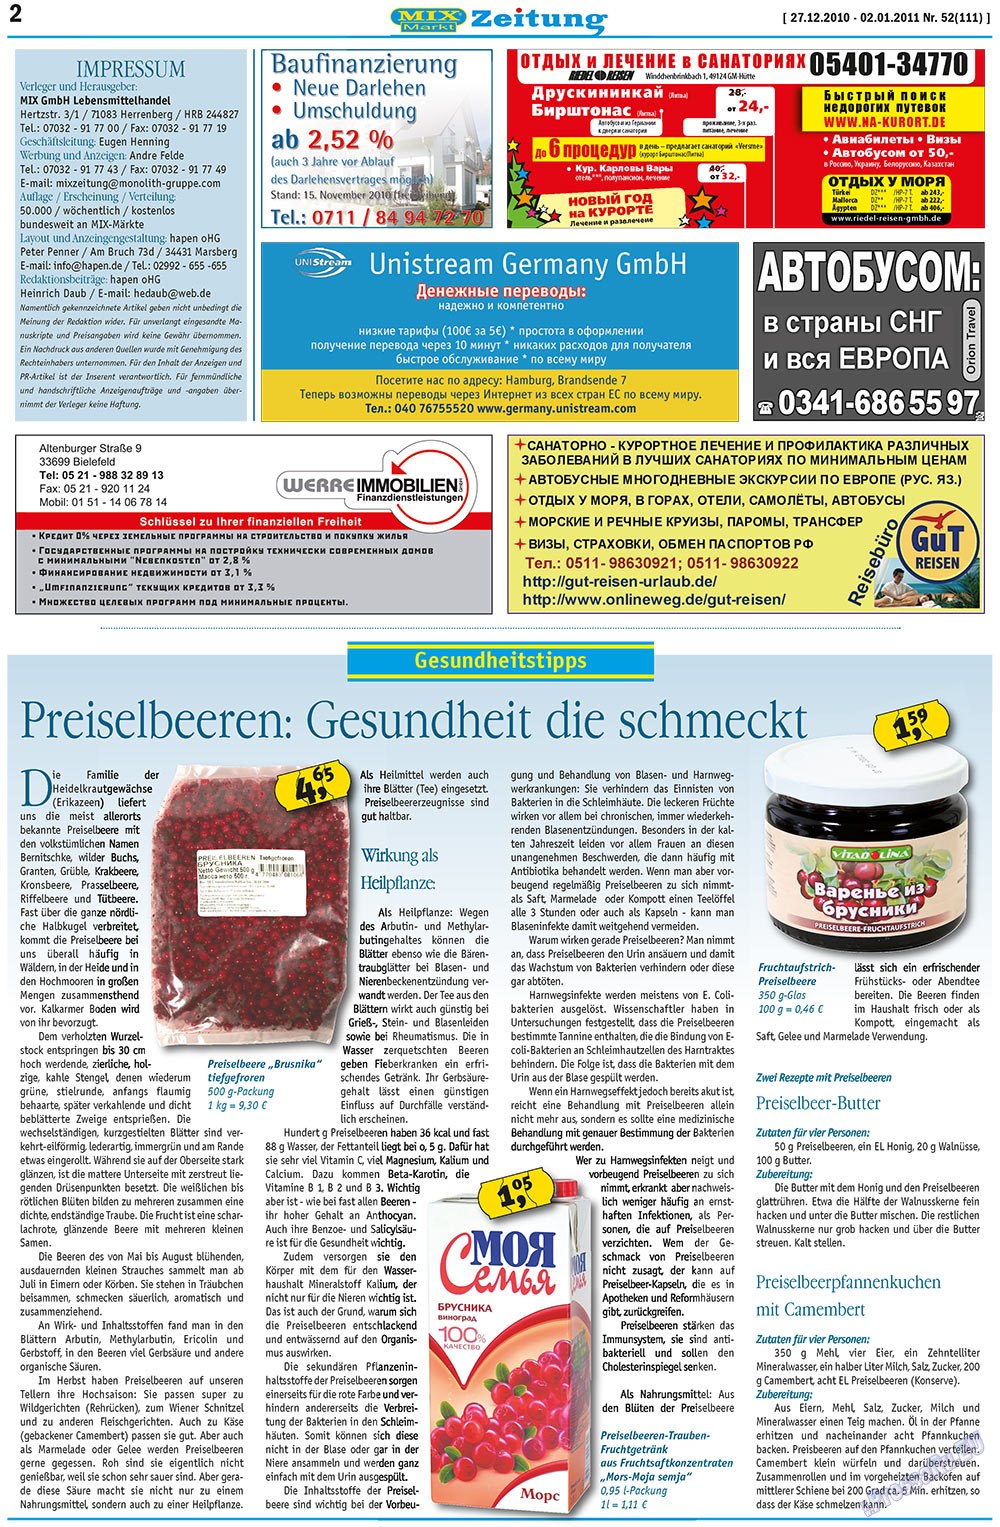 MIX-Markt Zeitung (Zeitung). 2010 Jahr, Ausgabe 52, Seite 2